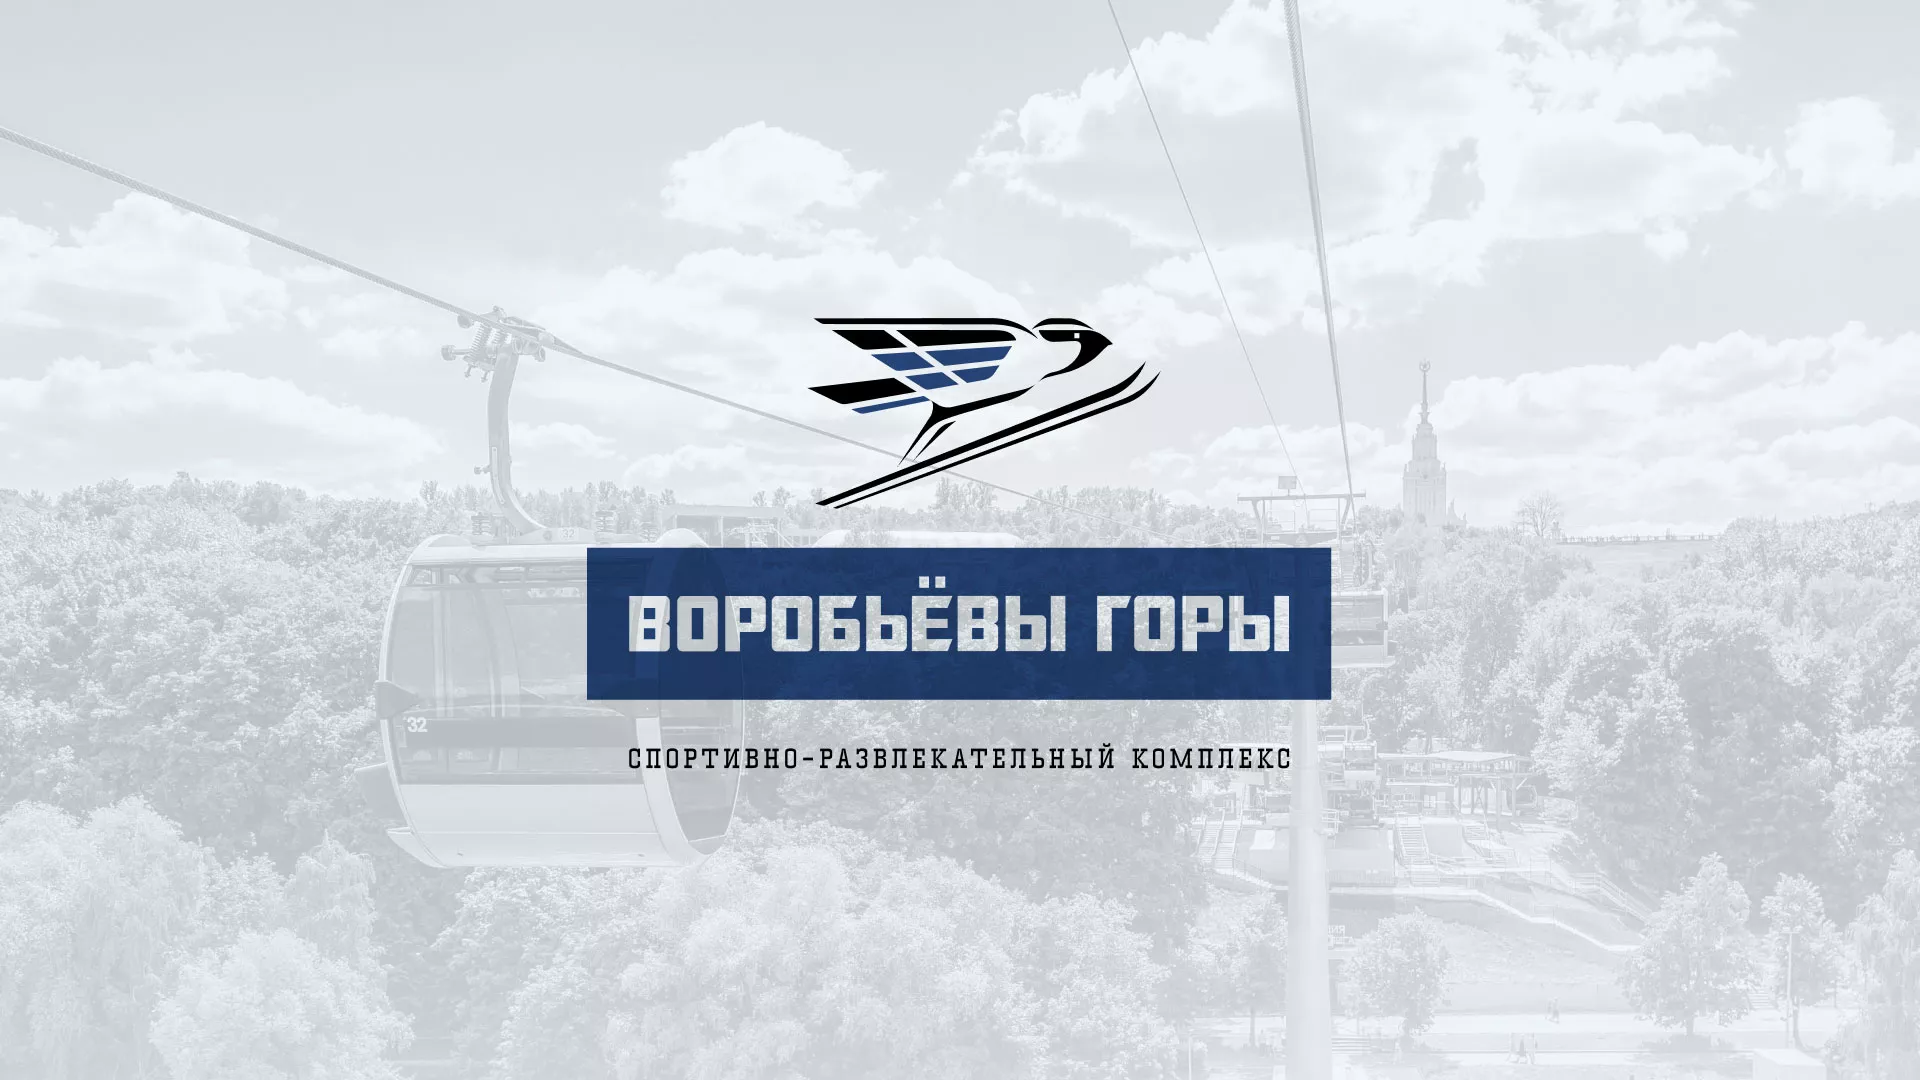 Разработка сайта в Черемхово для спортивно-развлекательного комплекса «Воробьёвы горы»